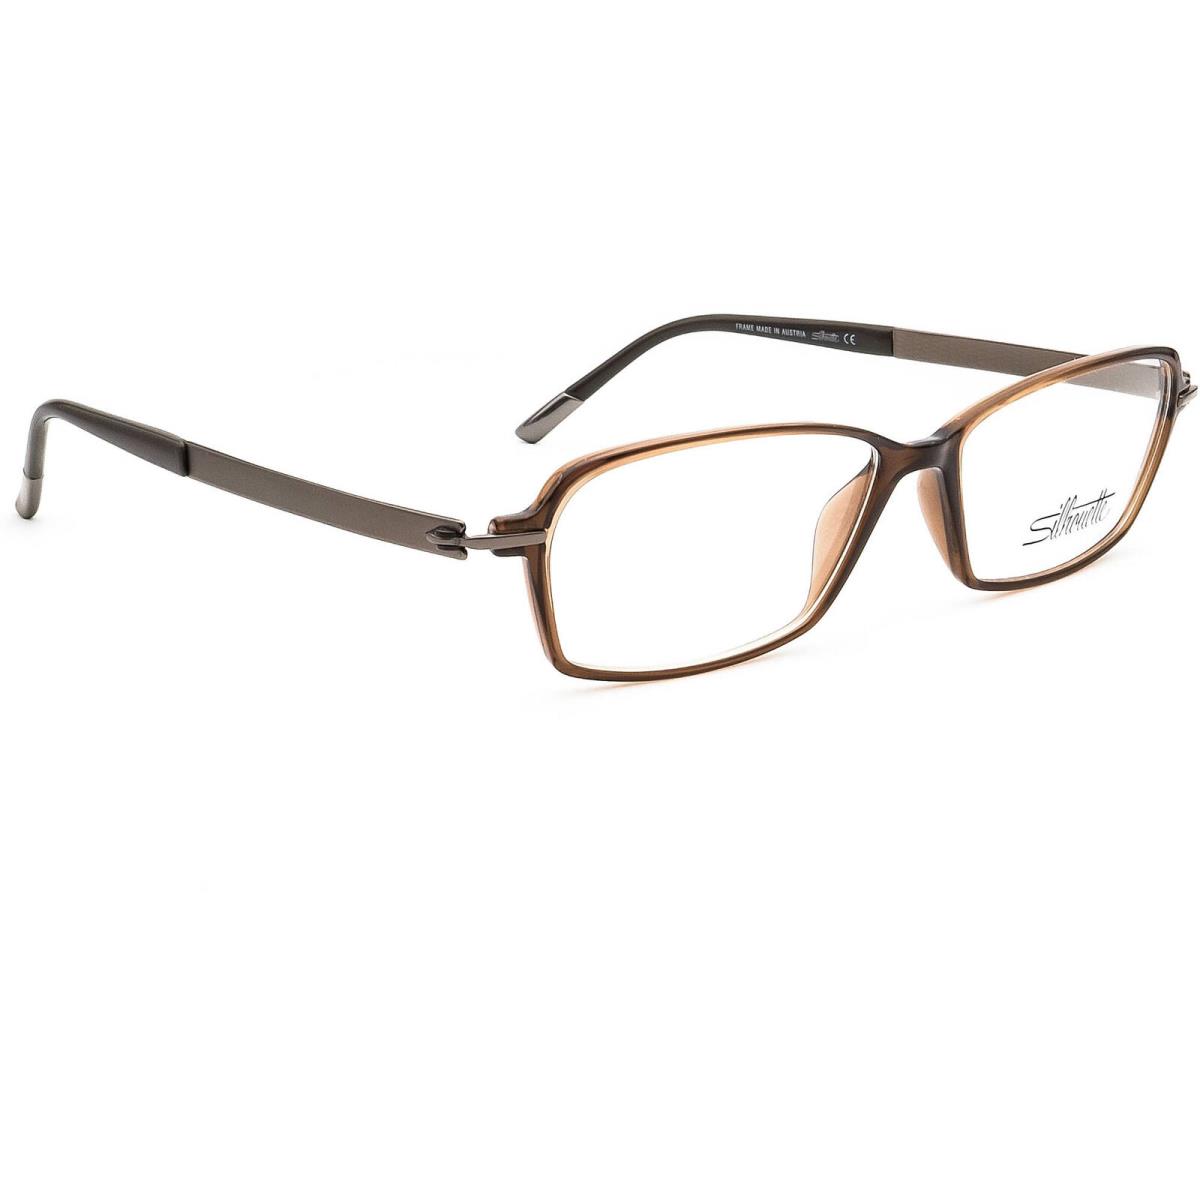 Silhouette Eyeglasses Spx 1552 40 6052 Titan Brown Rectangular Frame 53 14 135 - Brown Frame